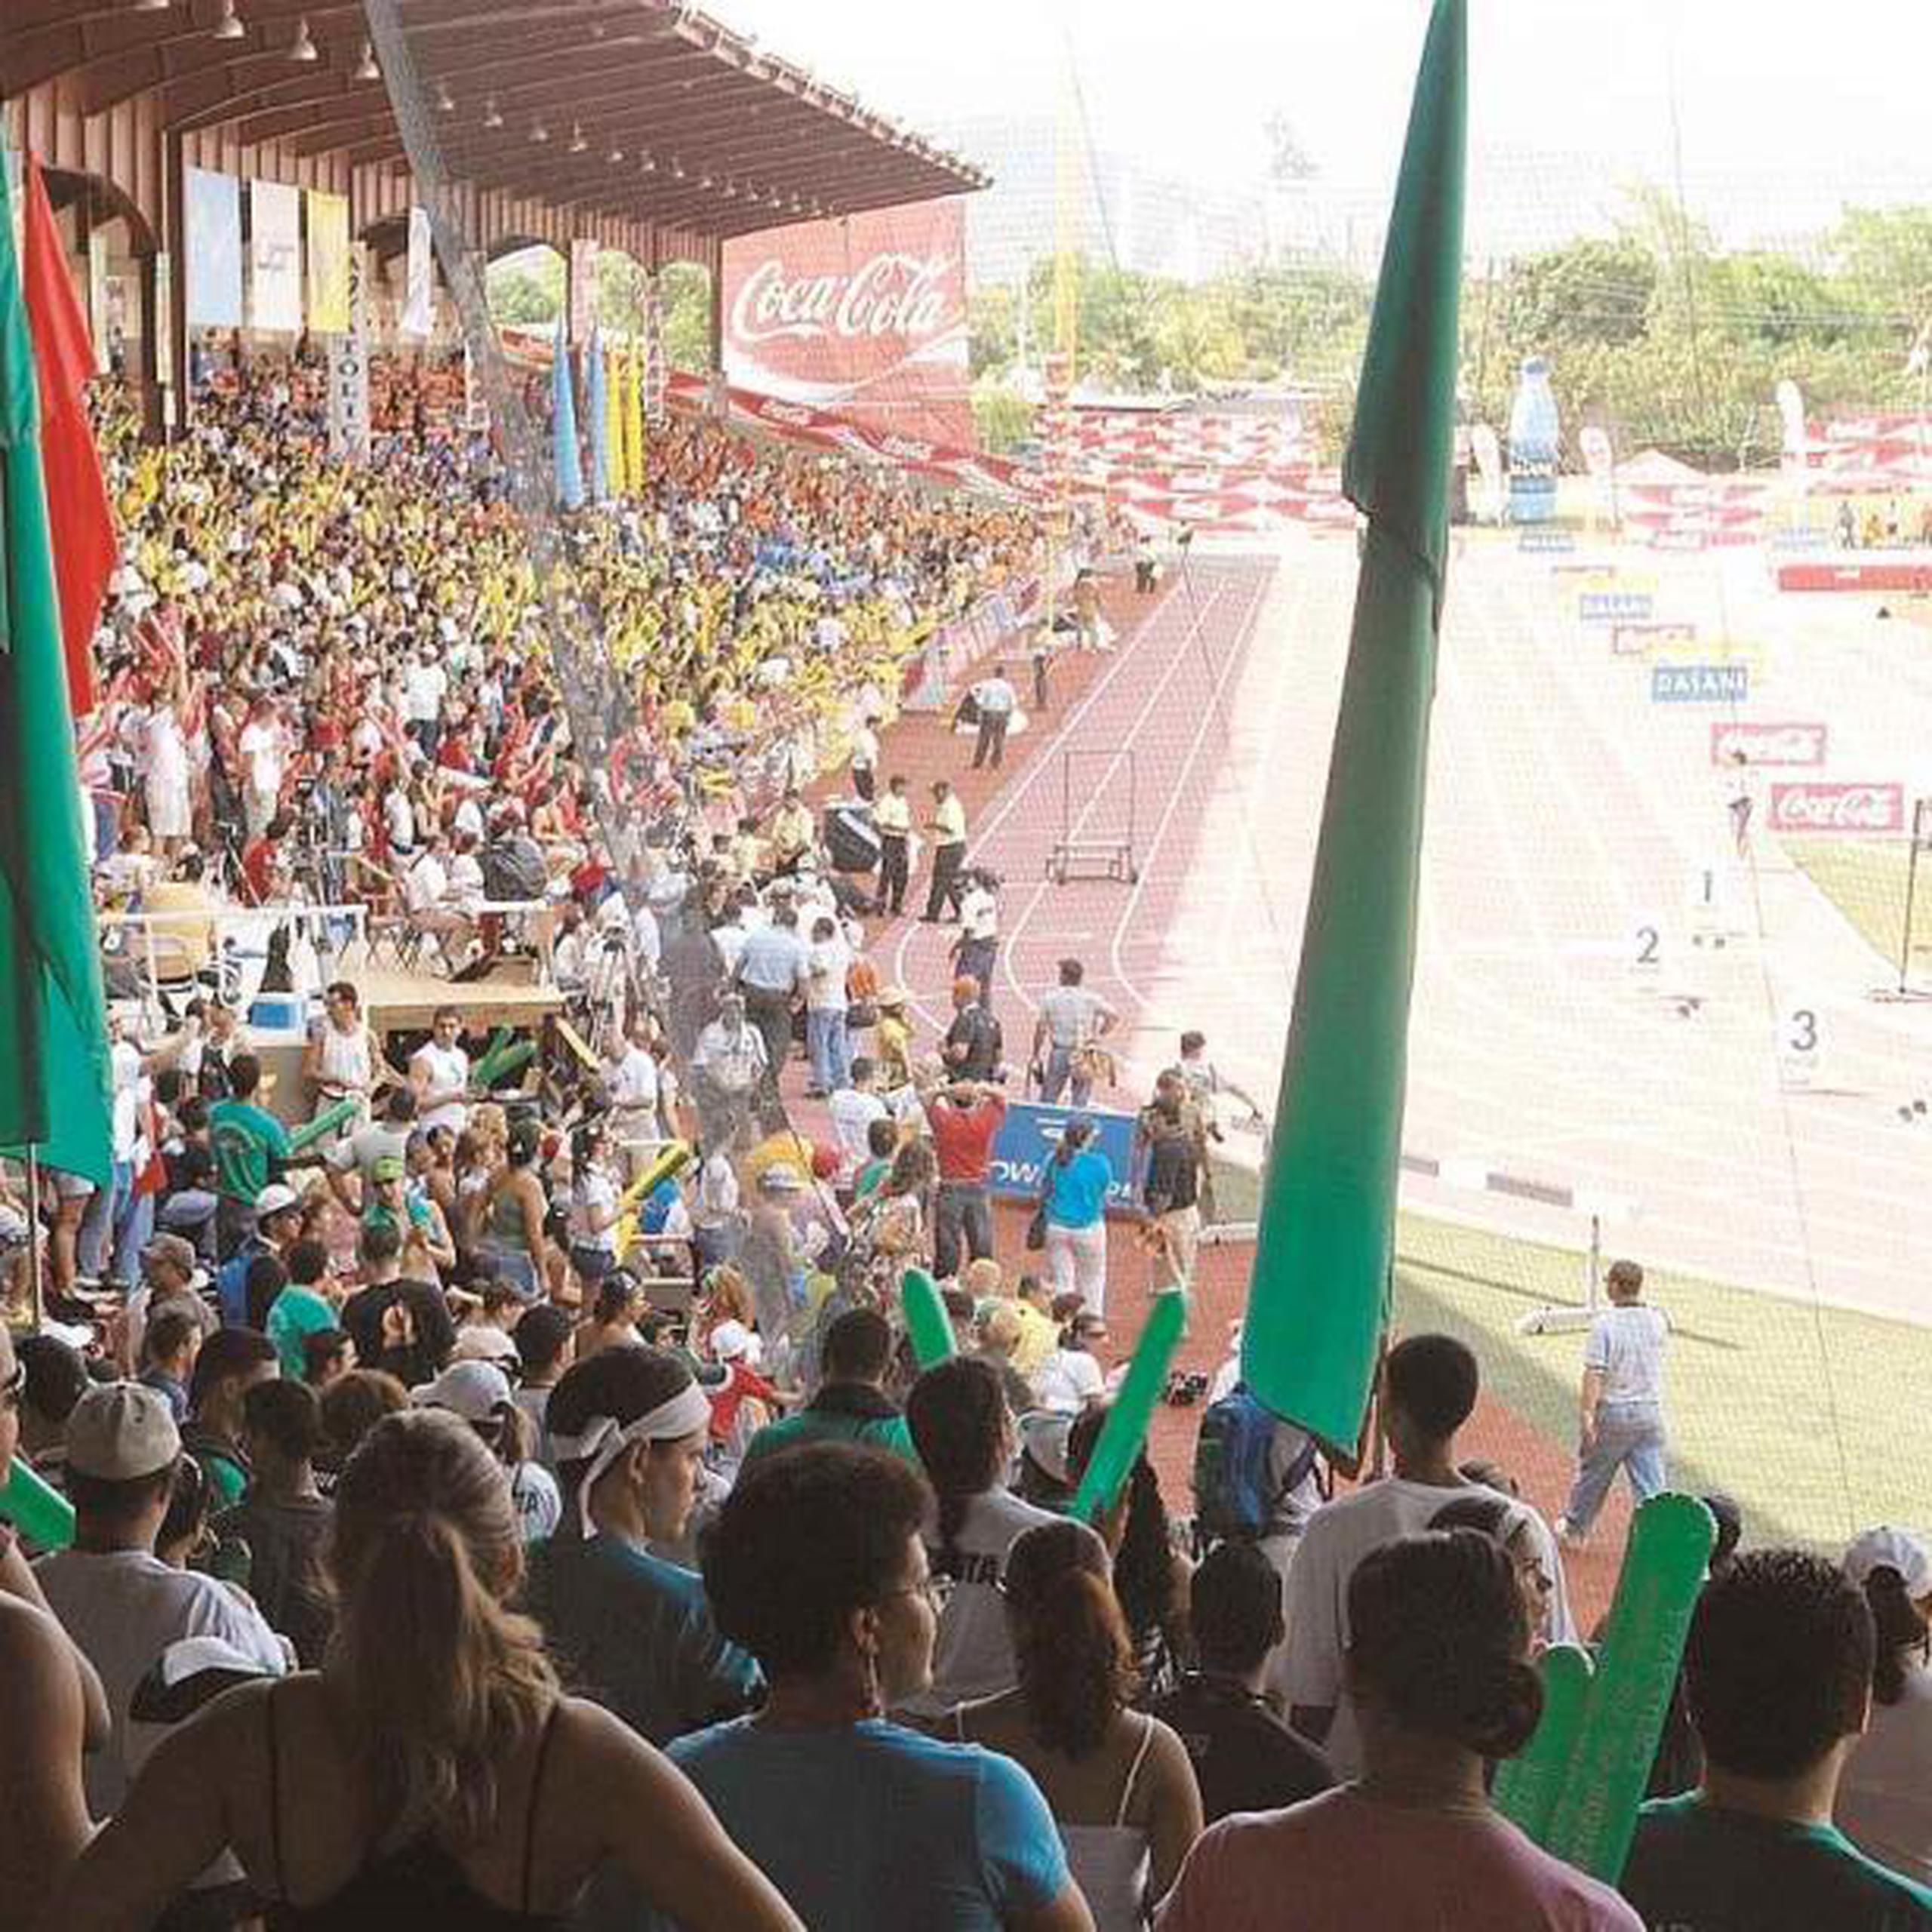 Carmen Yulín Cruz dijo que pedirá las Justas para el 2021, pero no indicó en que estadio se realizarían. El campeonato de atletismo de a LAI se celebrará en el 2020 nuevamente en Ponce. (Archivo)